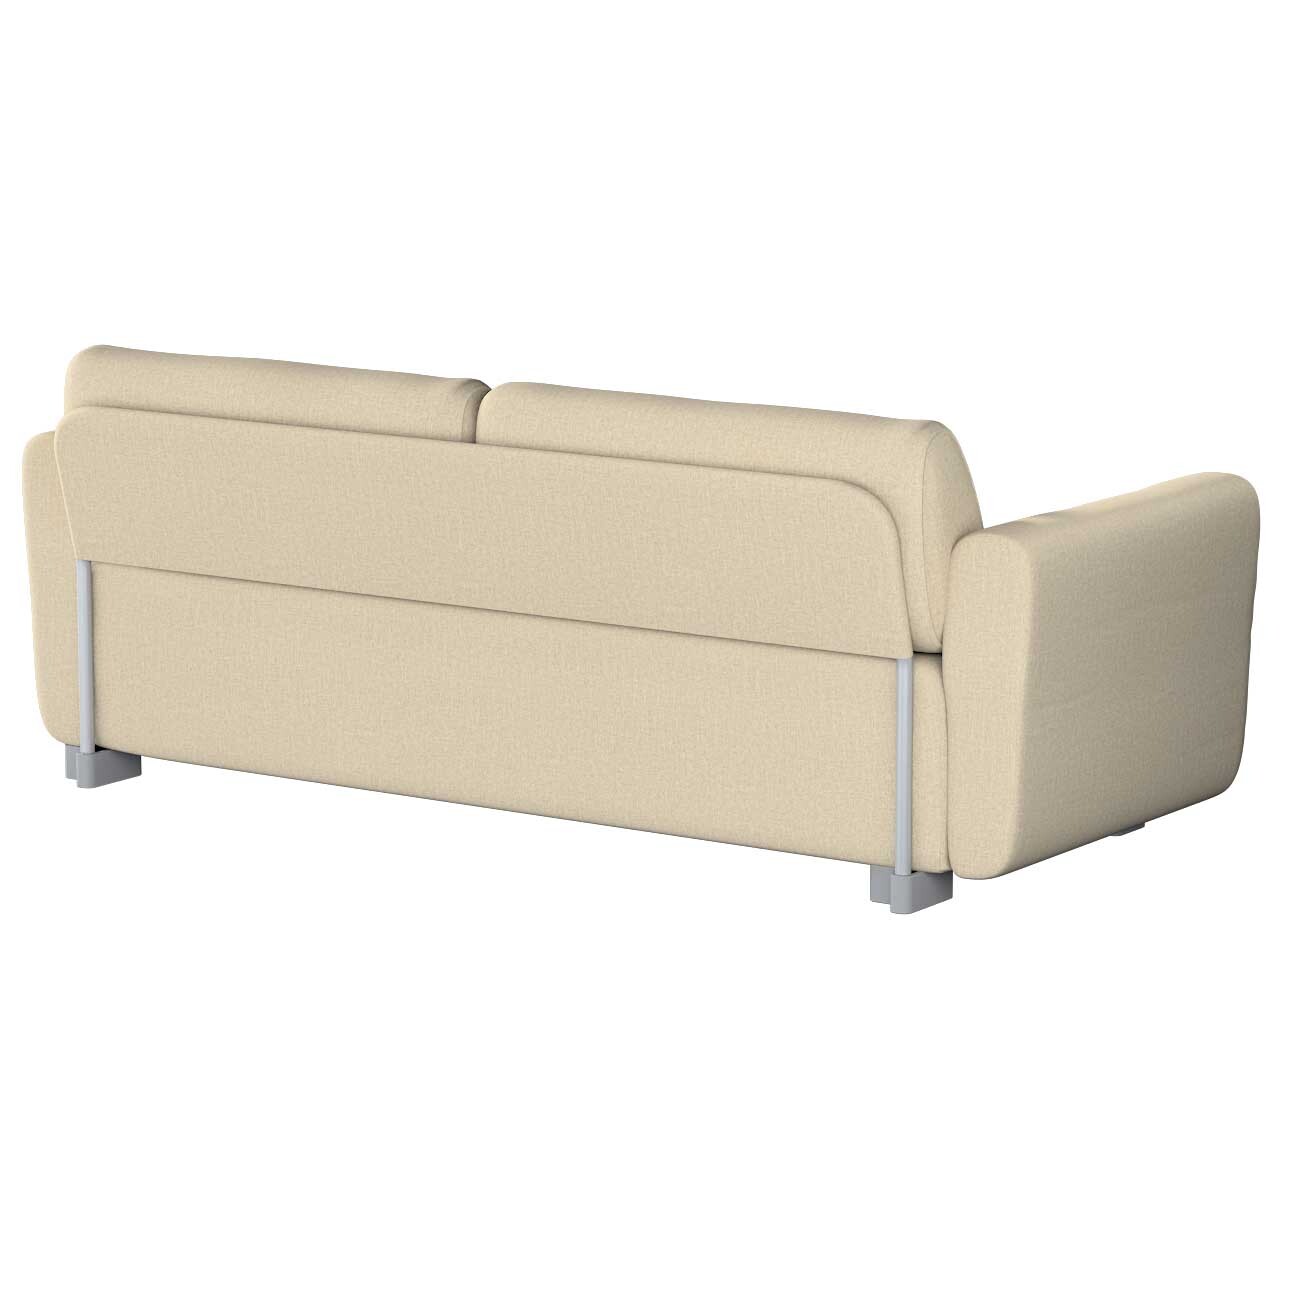 Bezug für Mysinge 2-Sitzer Sofa, beige- grau, Sofabezug Mysinge 2-Sitzer, C günstig online kaufen